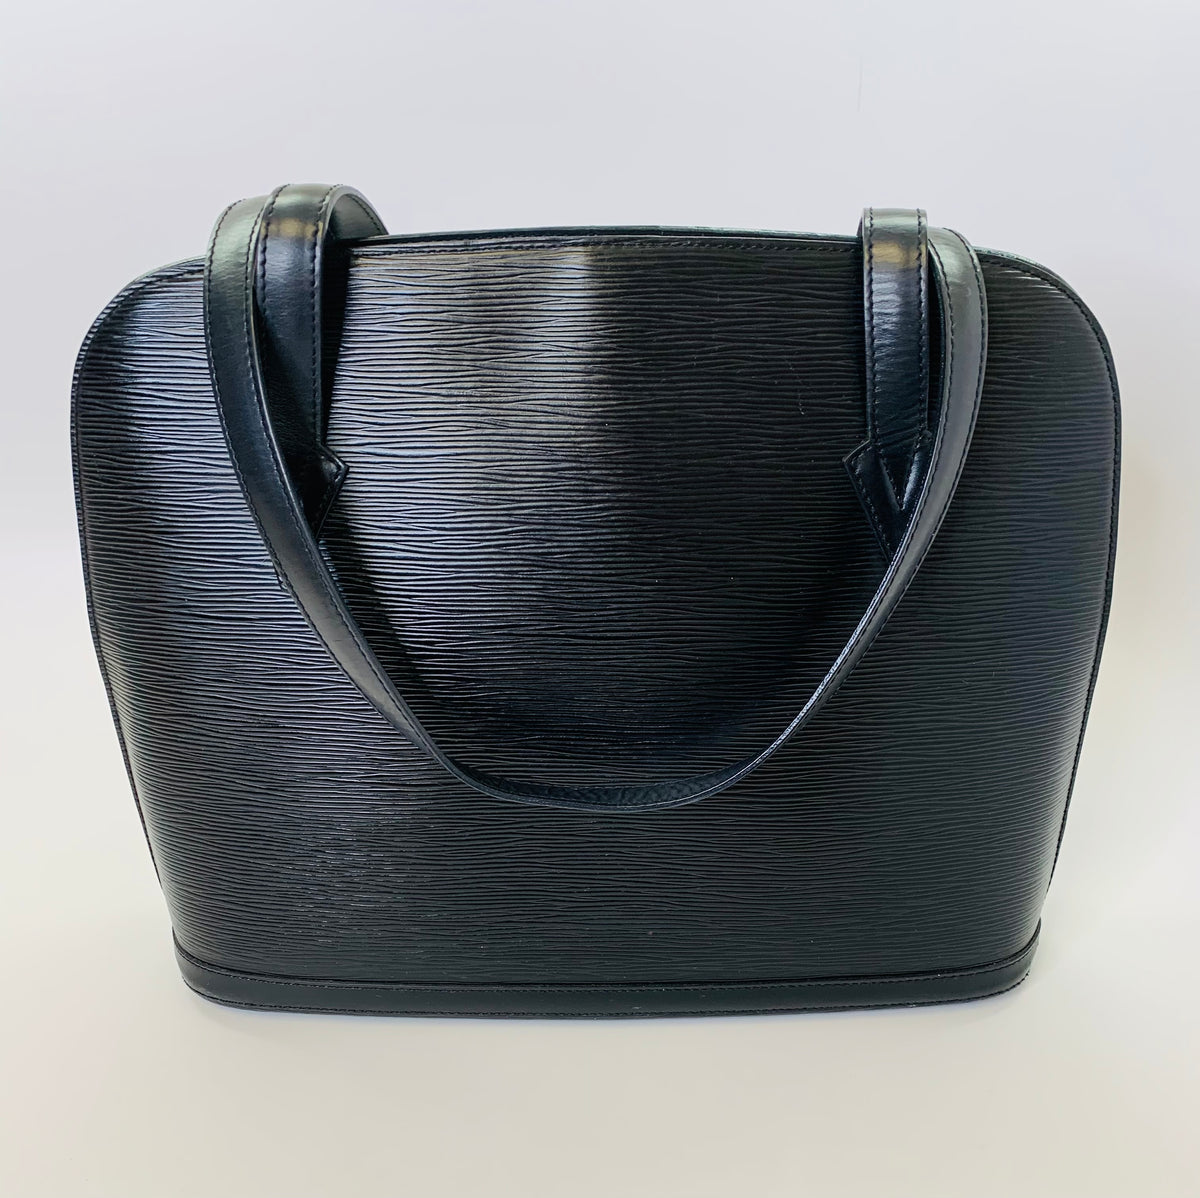 Louis Vuitton Moka Epi Leather Lussac Tote Bag - Louis Vuitton